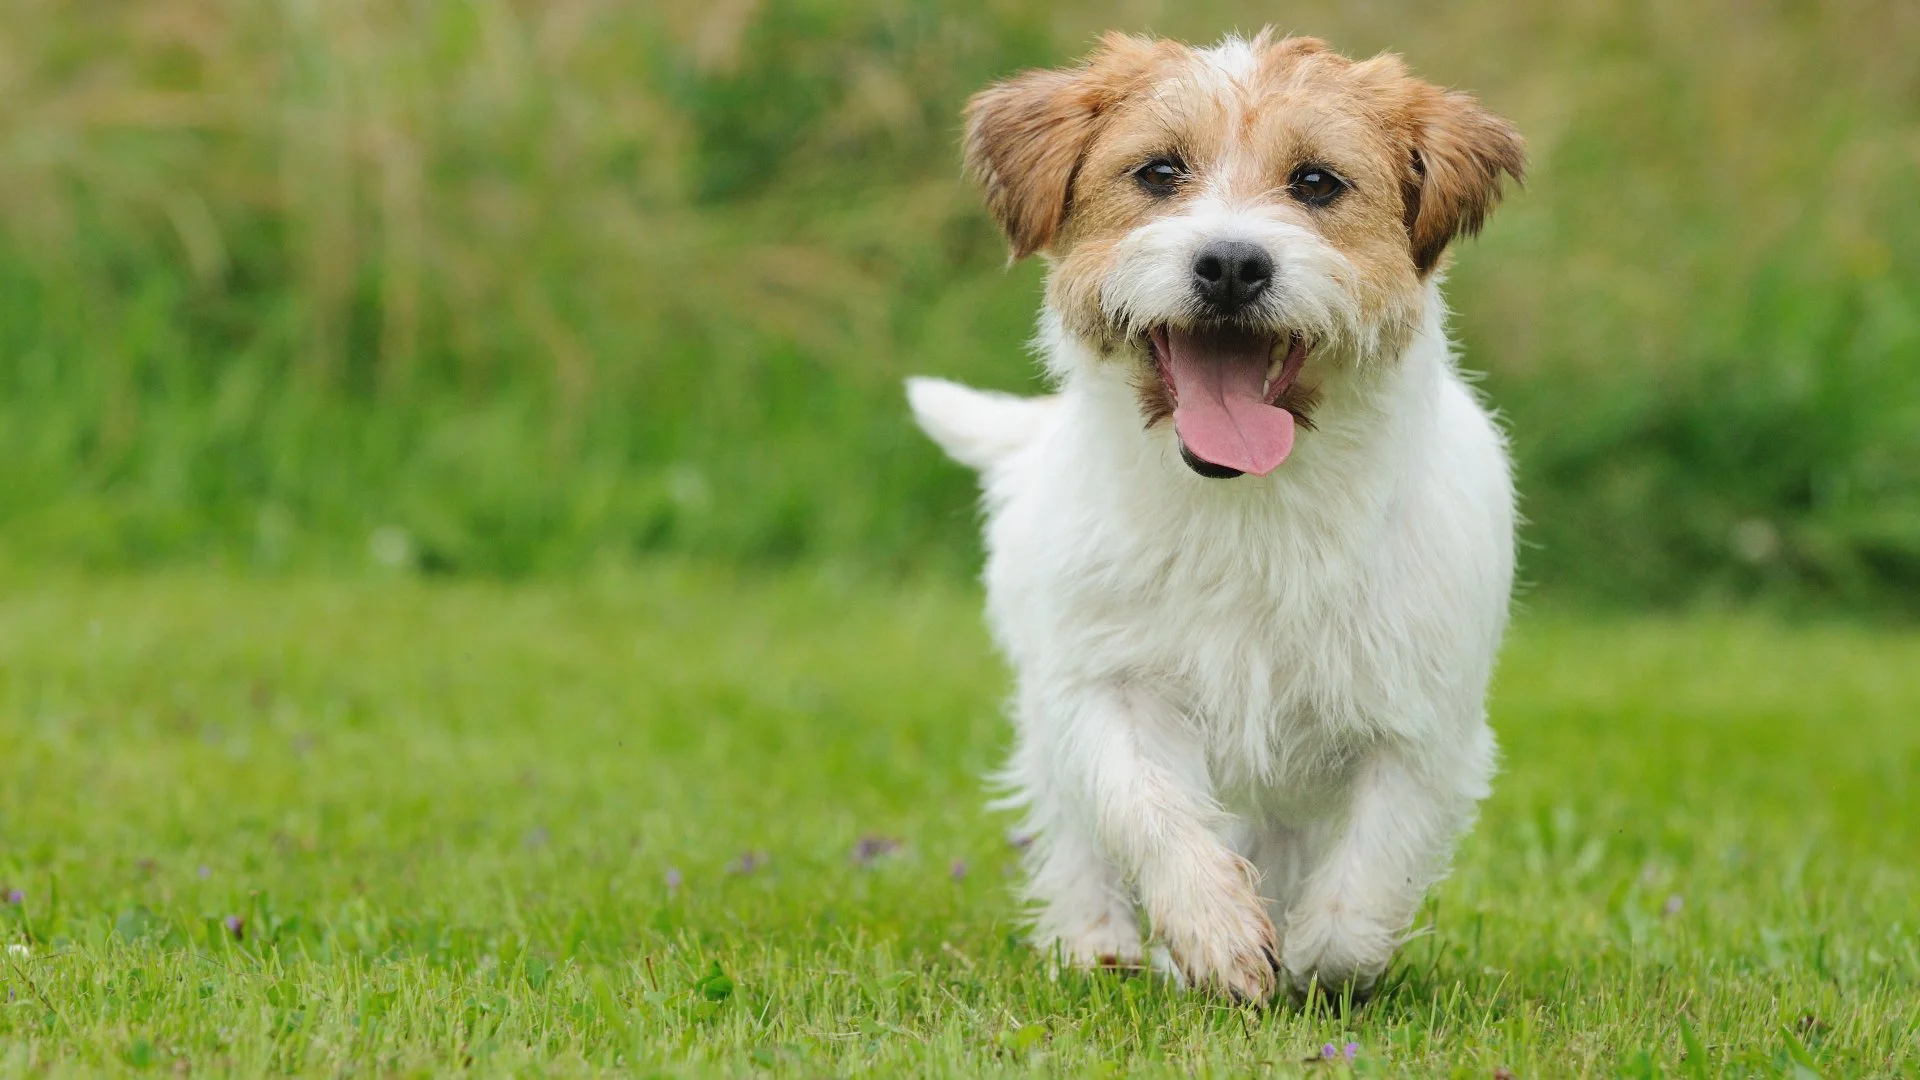 How Long Should You Wait To Let Your Pets Outside After a Fertilizer Treatment?